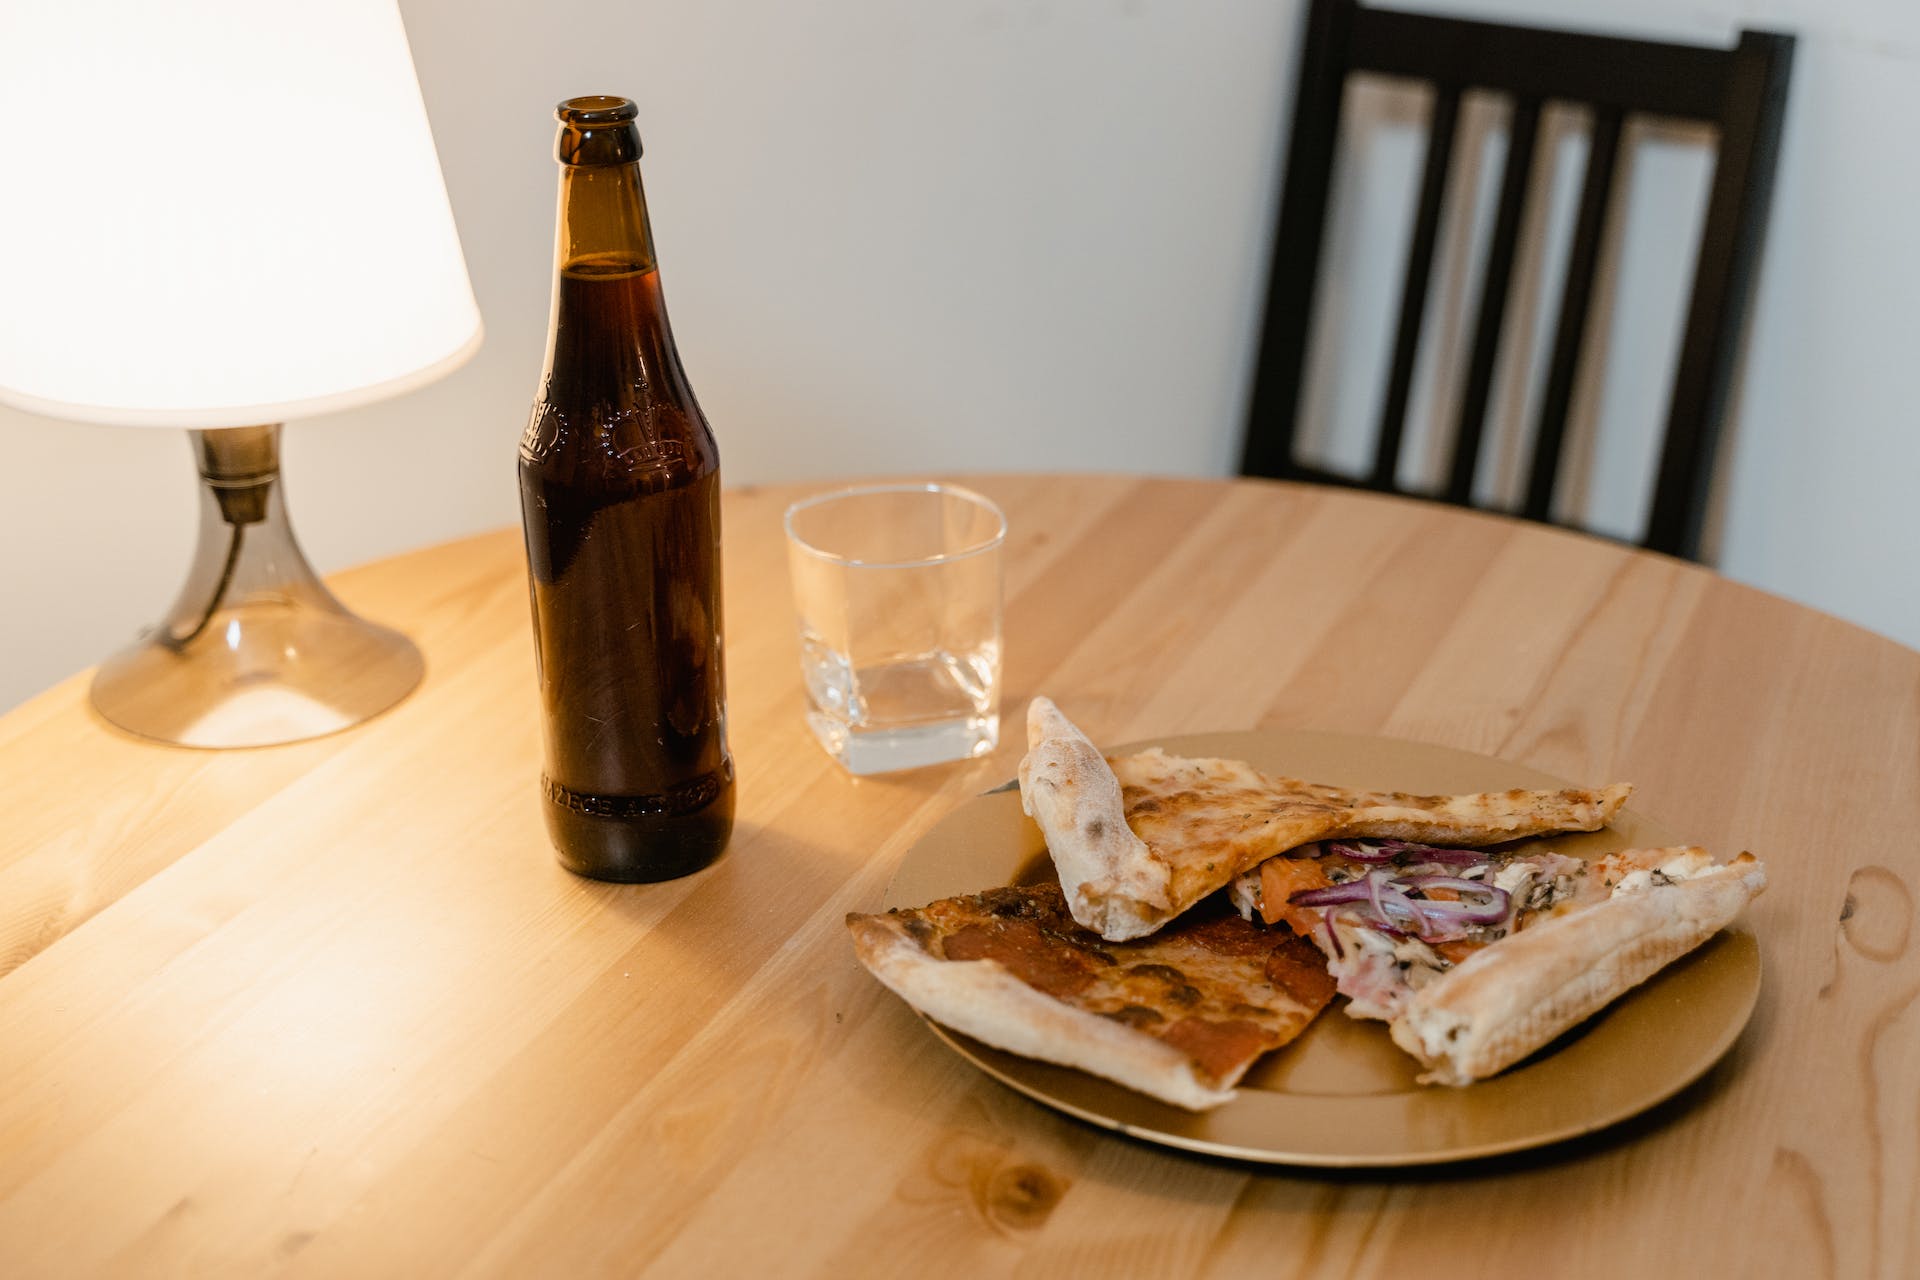 Pizza et bière sur une table | Source : Pexels